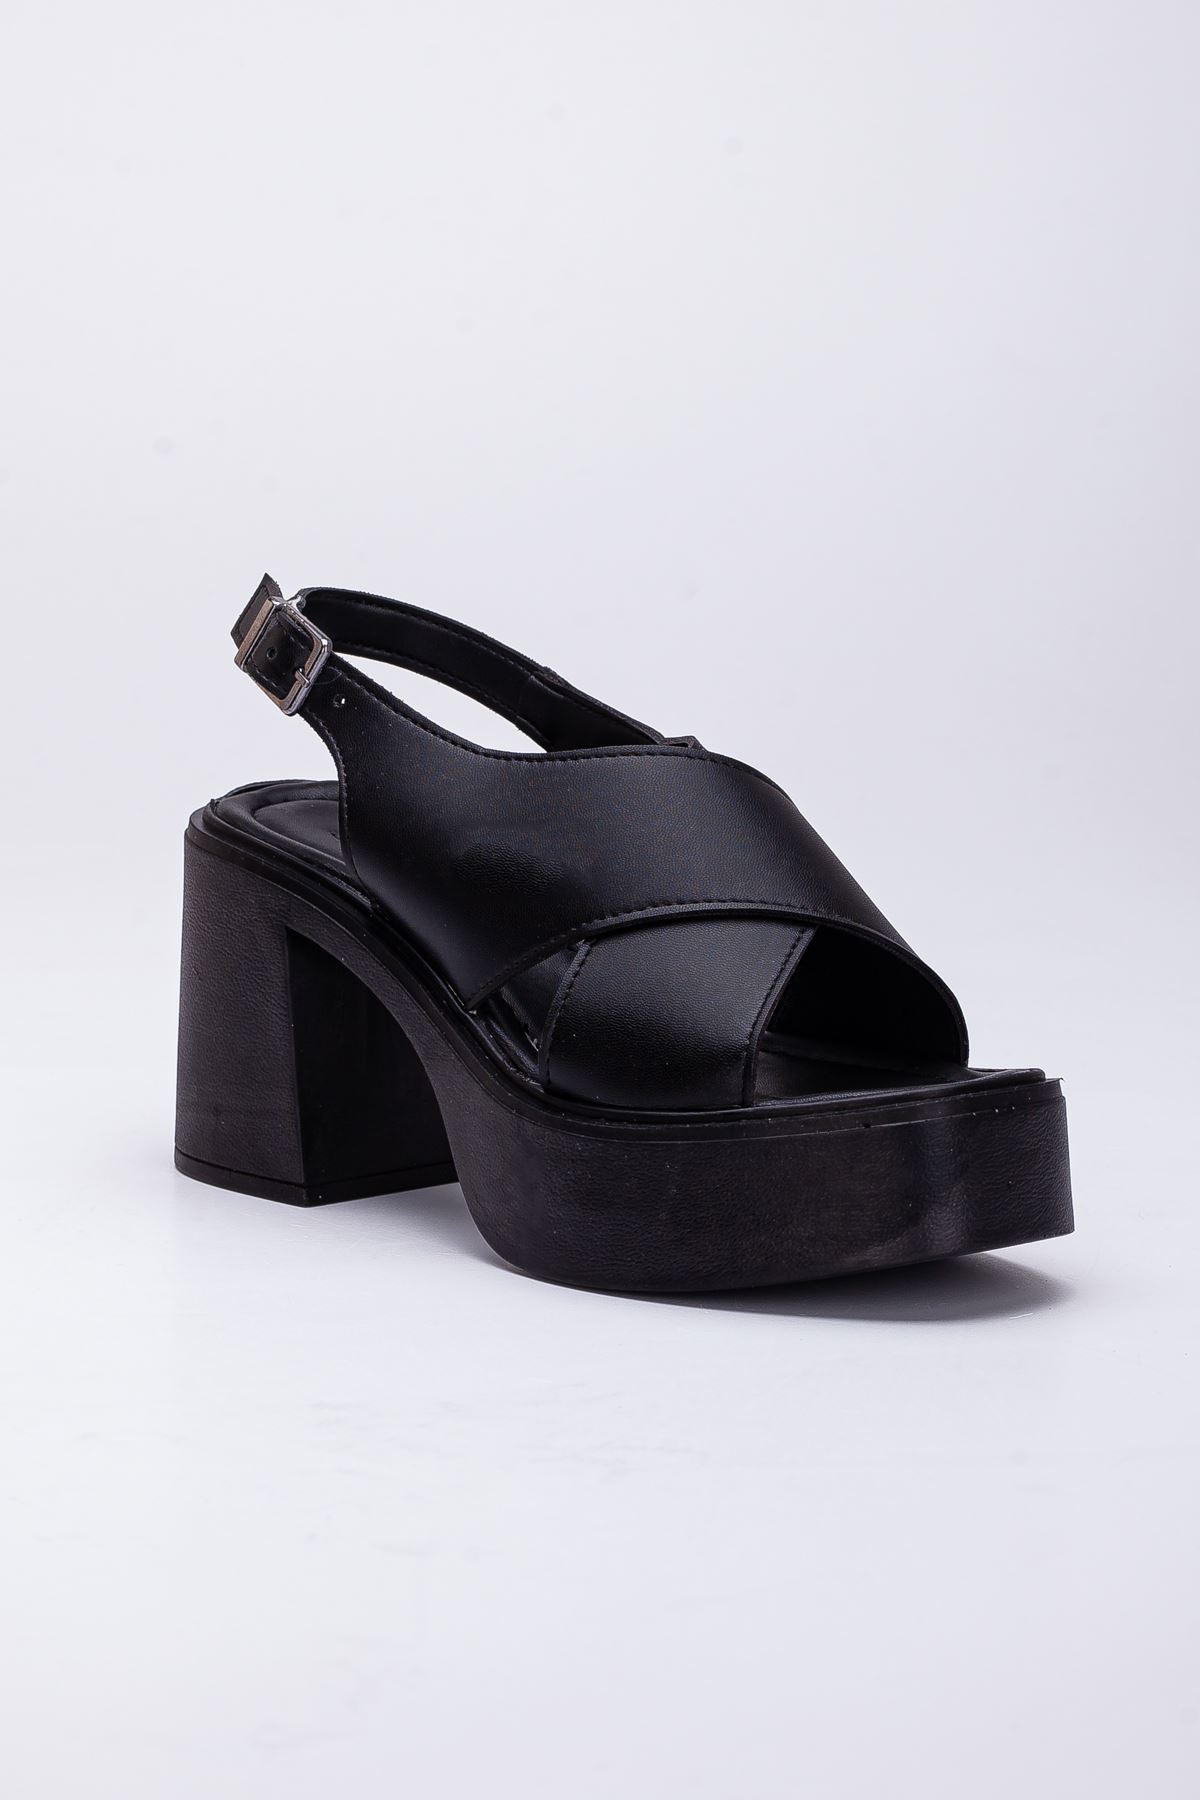 Kadın Topuklu Platform Sandalet Siyah Cilt